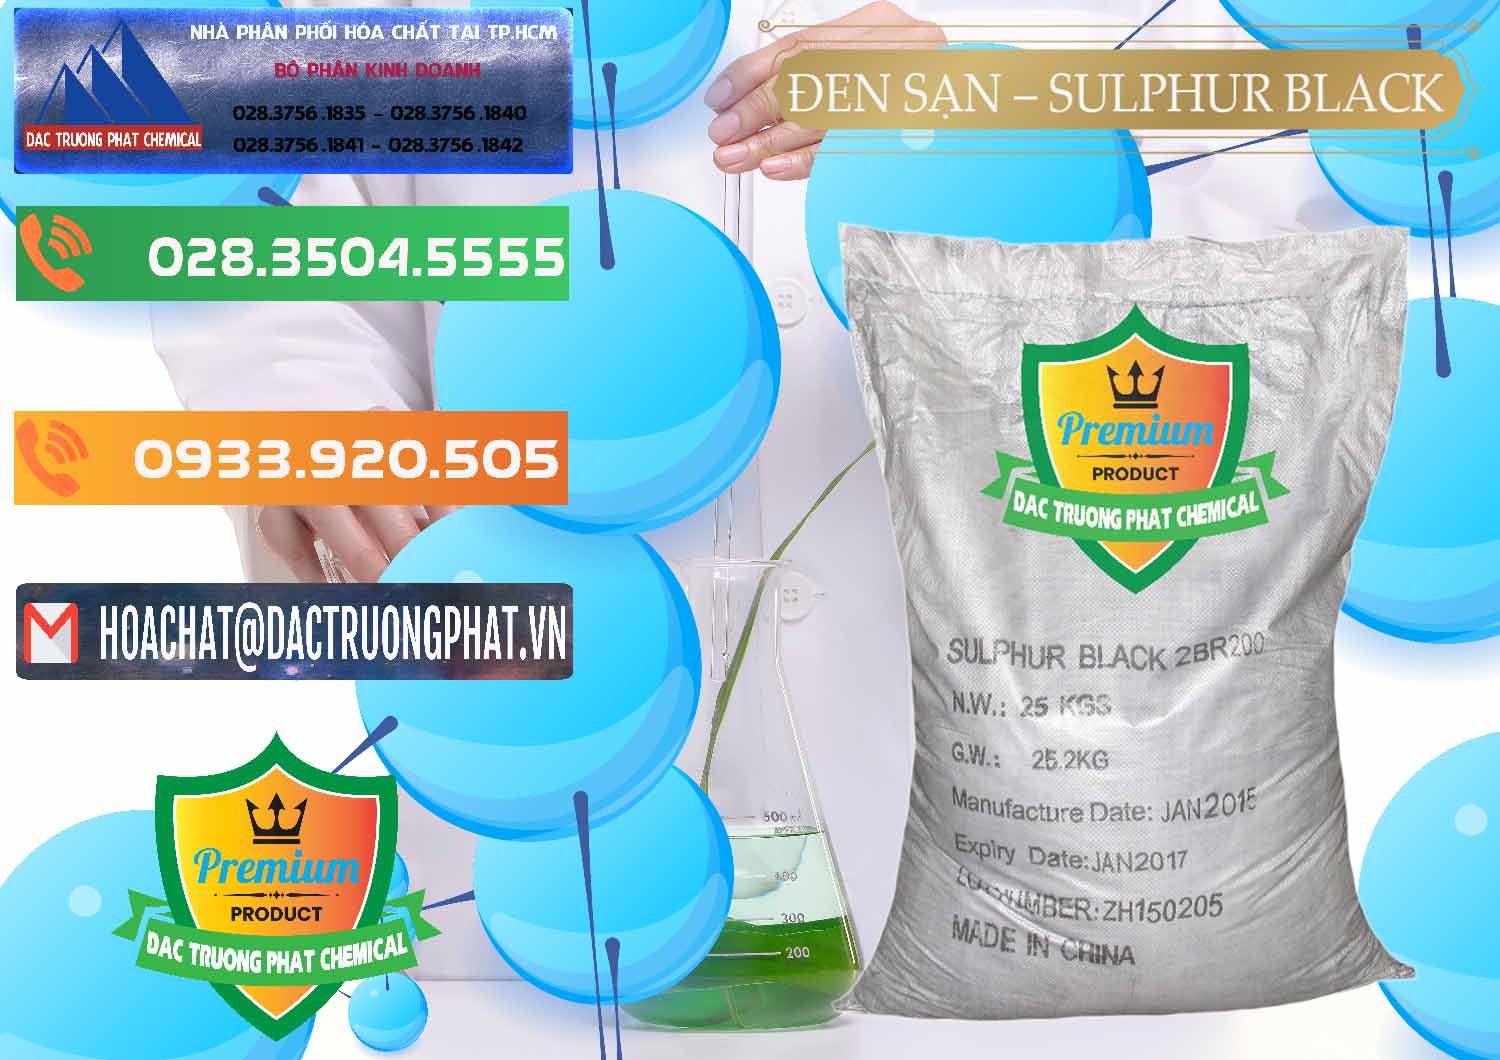 Đơn vị kinh doanh - bán Đen Sạn – Sulphur Black Trung Quốc China - 0062 - Nhà phân phối & cung cấp hóa chất tại TP.HCM - hoachatxulynuoc.com.vn